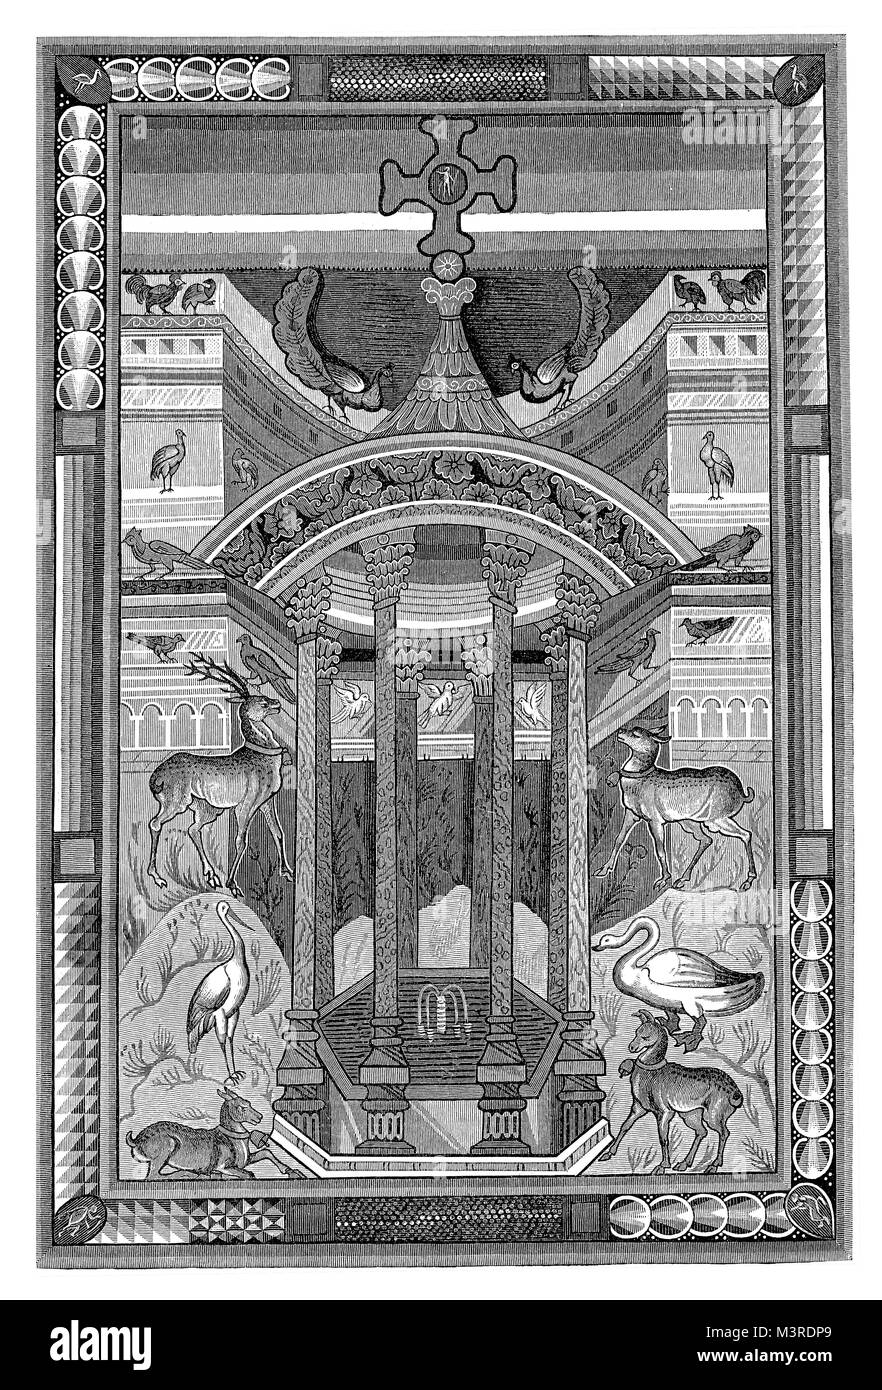 Miniatura dal libro dei vangeli di Carlo Magno o Carlo Magno, IX secolo, incisione vintage Foto Stock